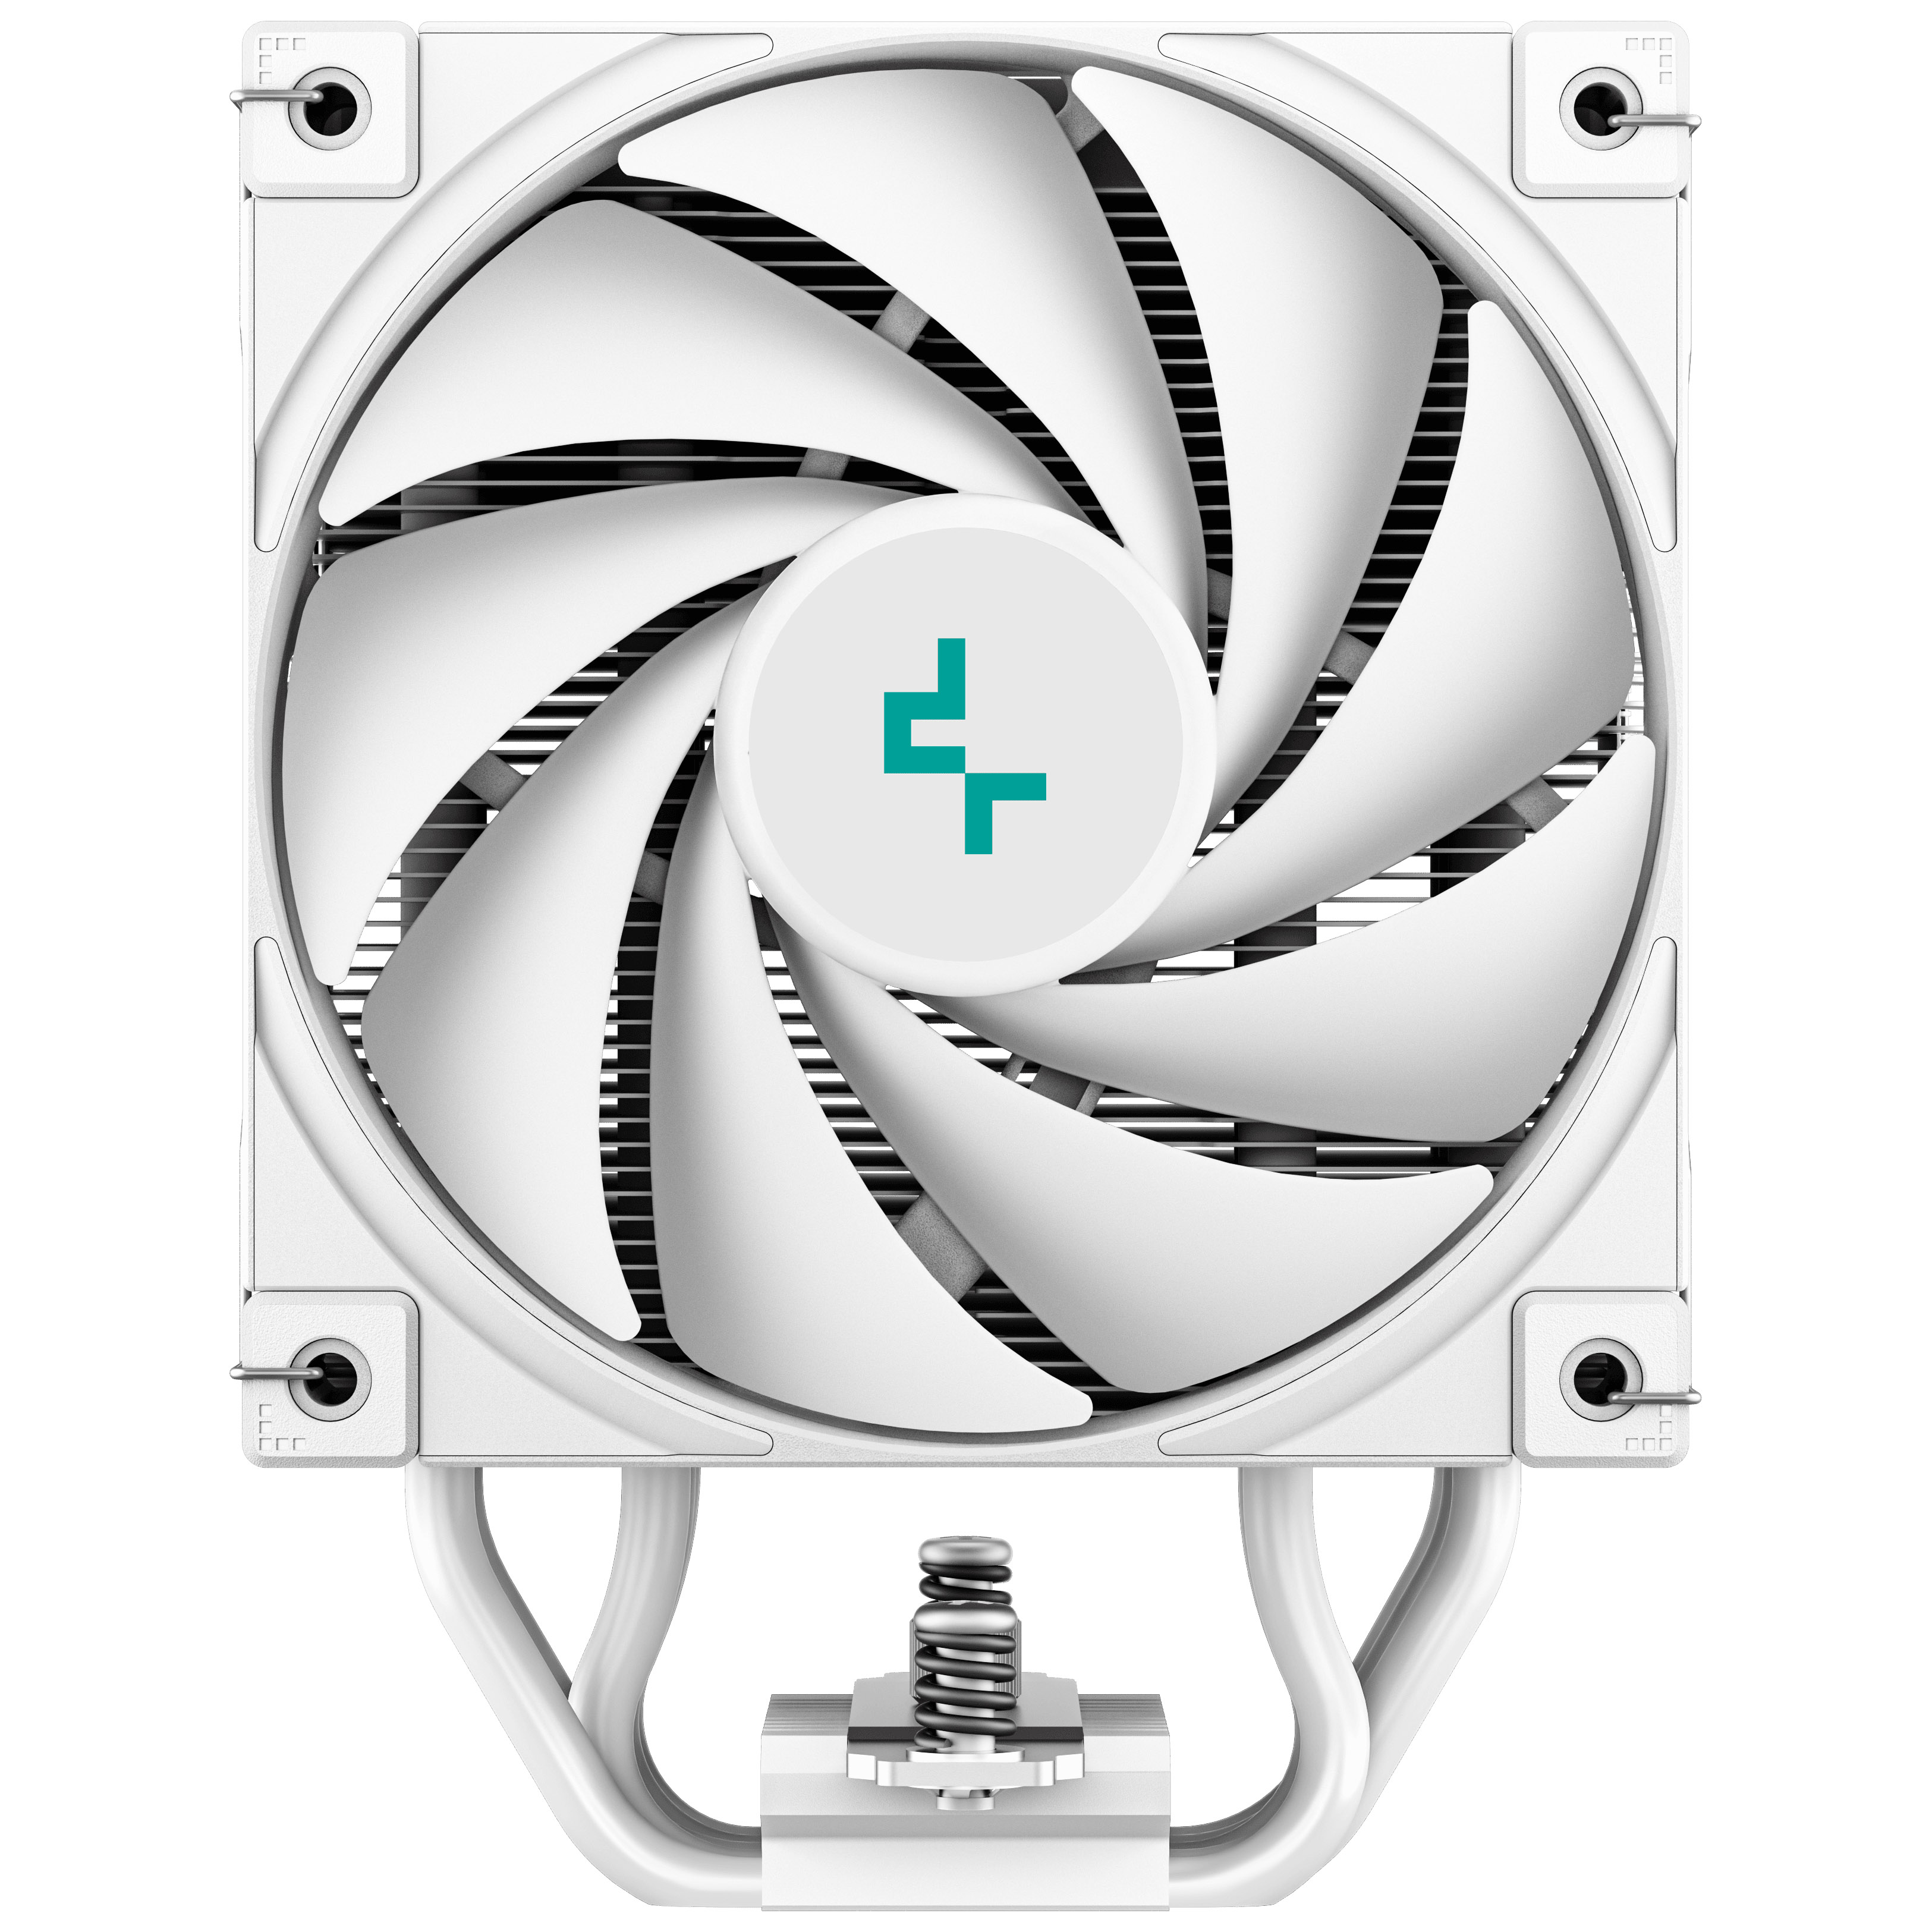 DeepCool - Deepcool AK500S Digital White CPU Cooler - 120mm